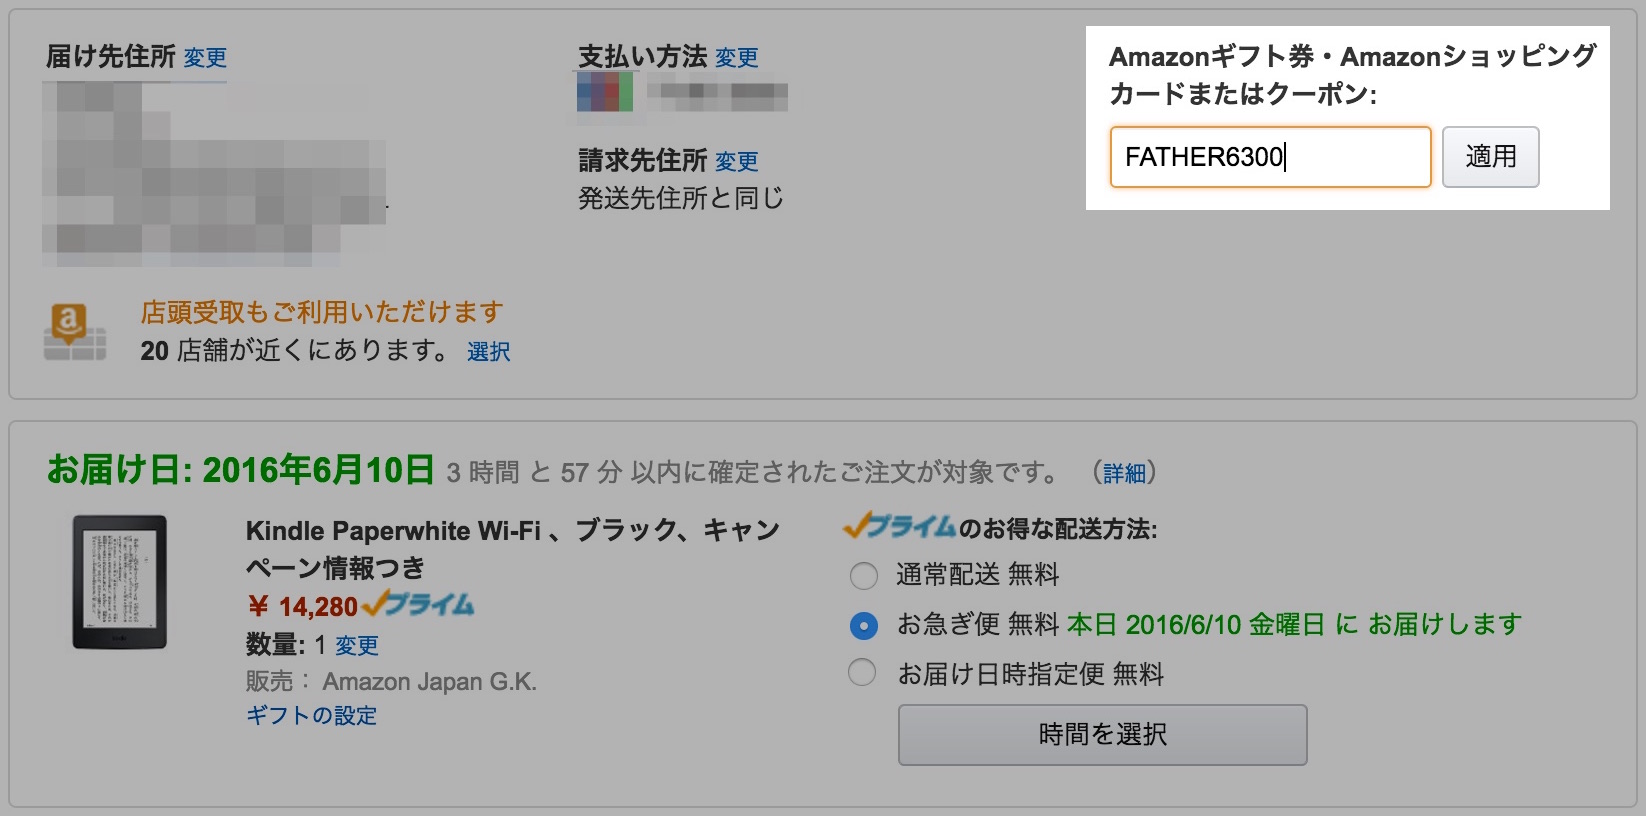 父の日セール、Kindle Paperwhiteが6300円オフに